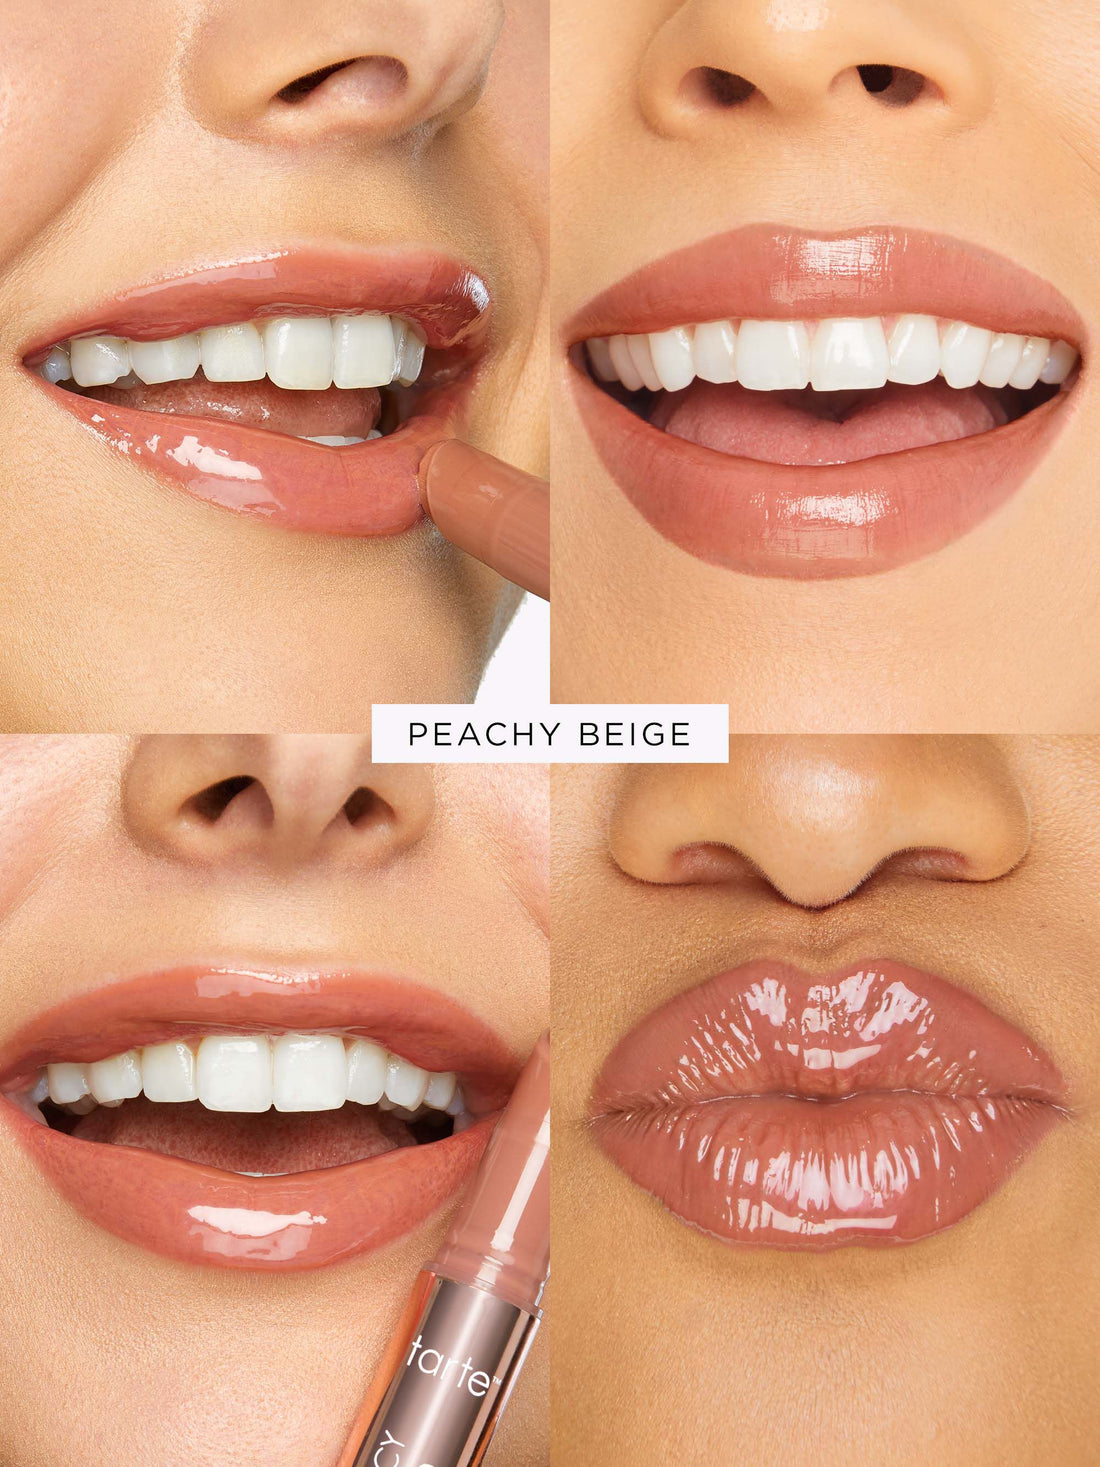 Maracuja juicy lip plump - Peachy Beige